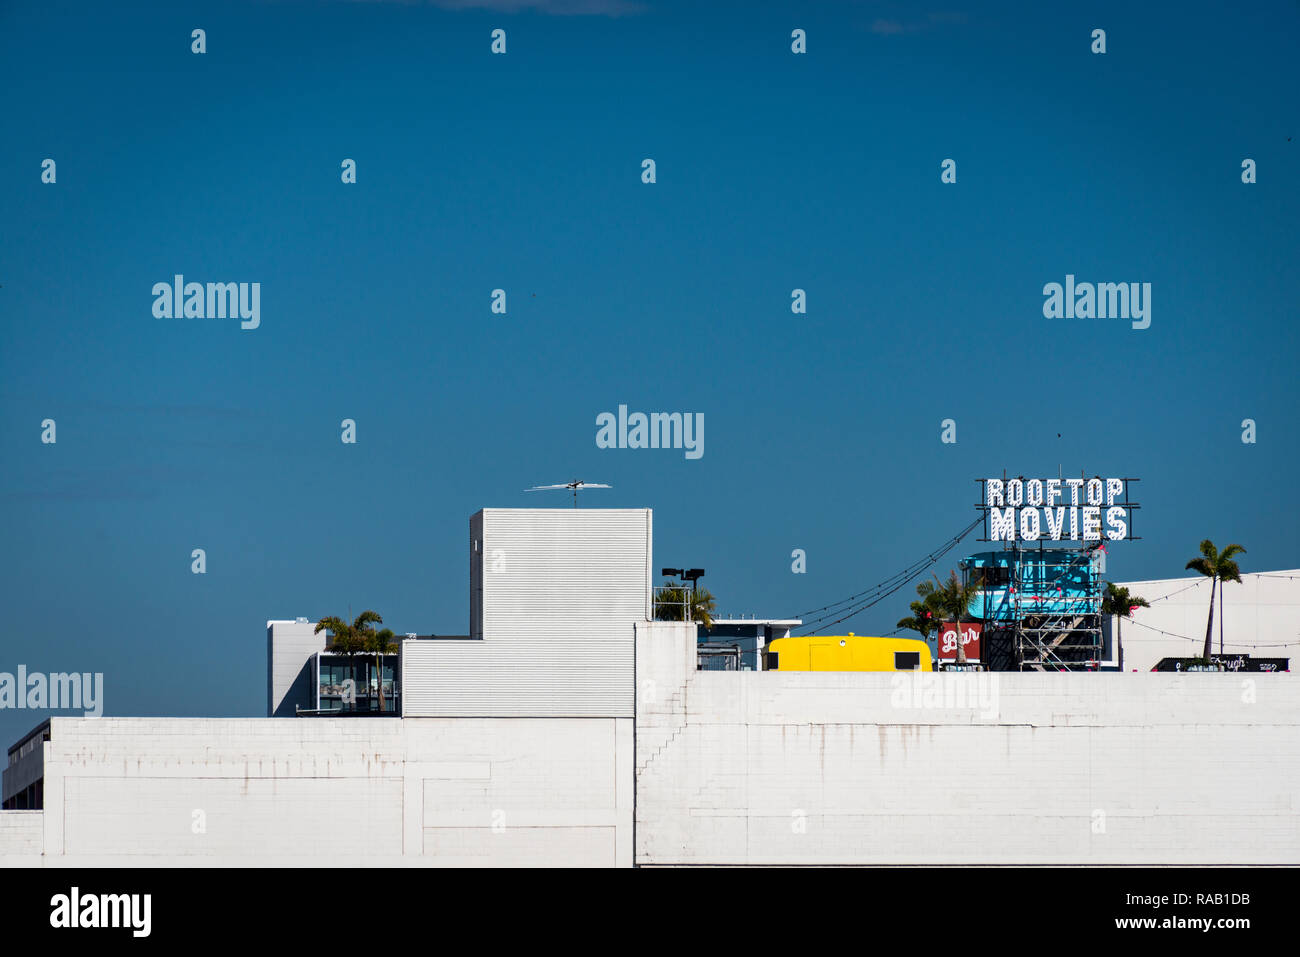 Un segno per tetto film su un edificio in cemento bianco contro un vivid blue sky Foto Stock